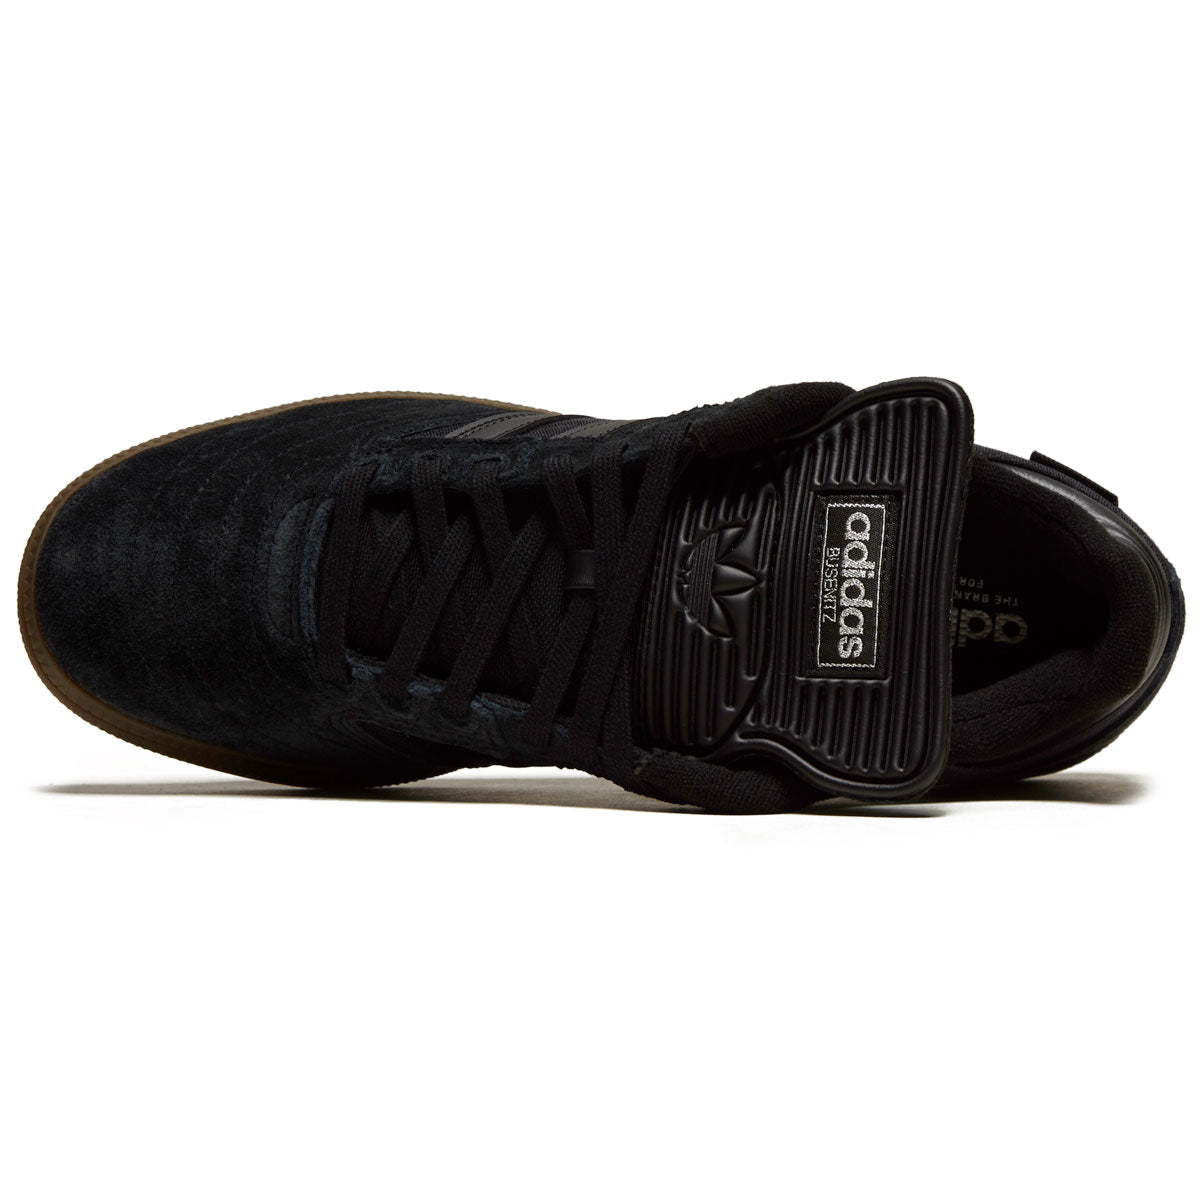 Adidas Busenitz Shoes - Core Black/Core Black/Gum image 3